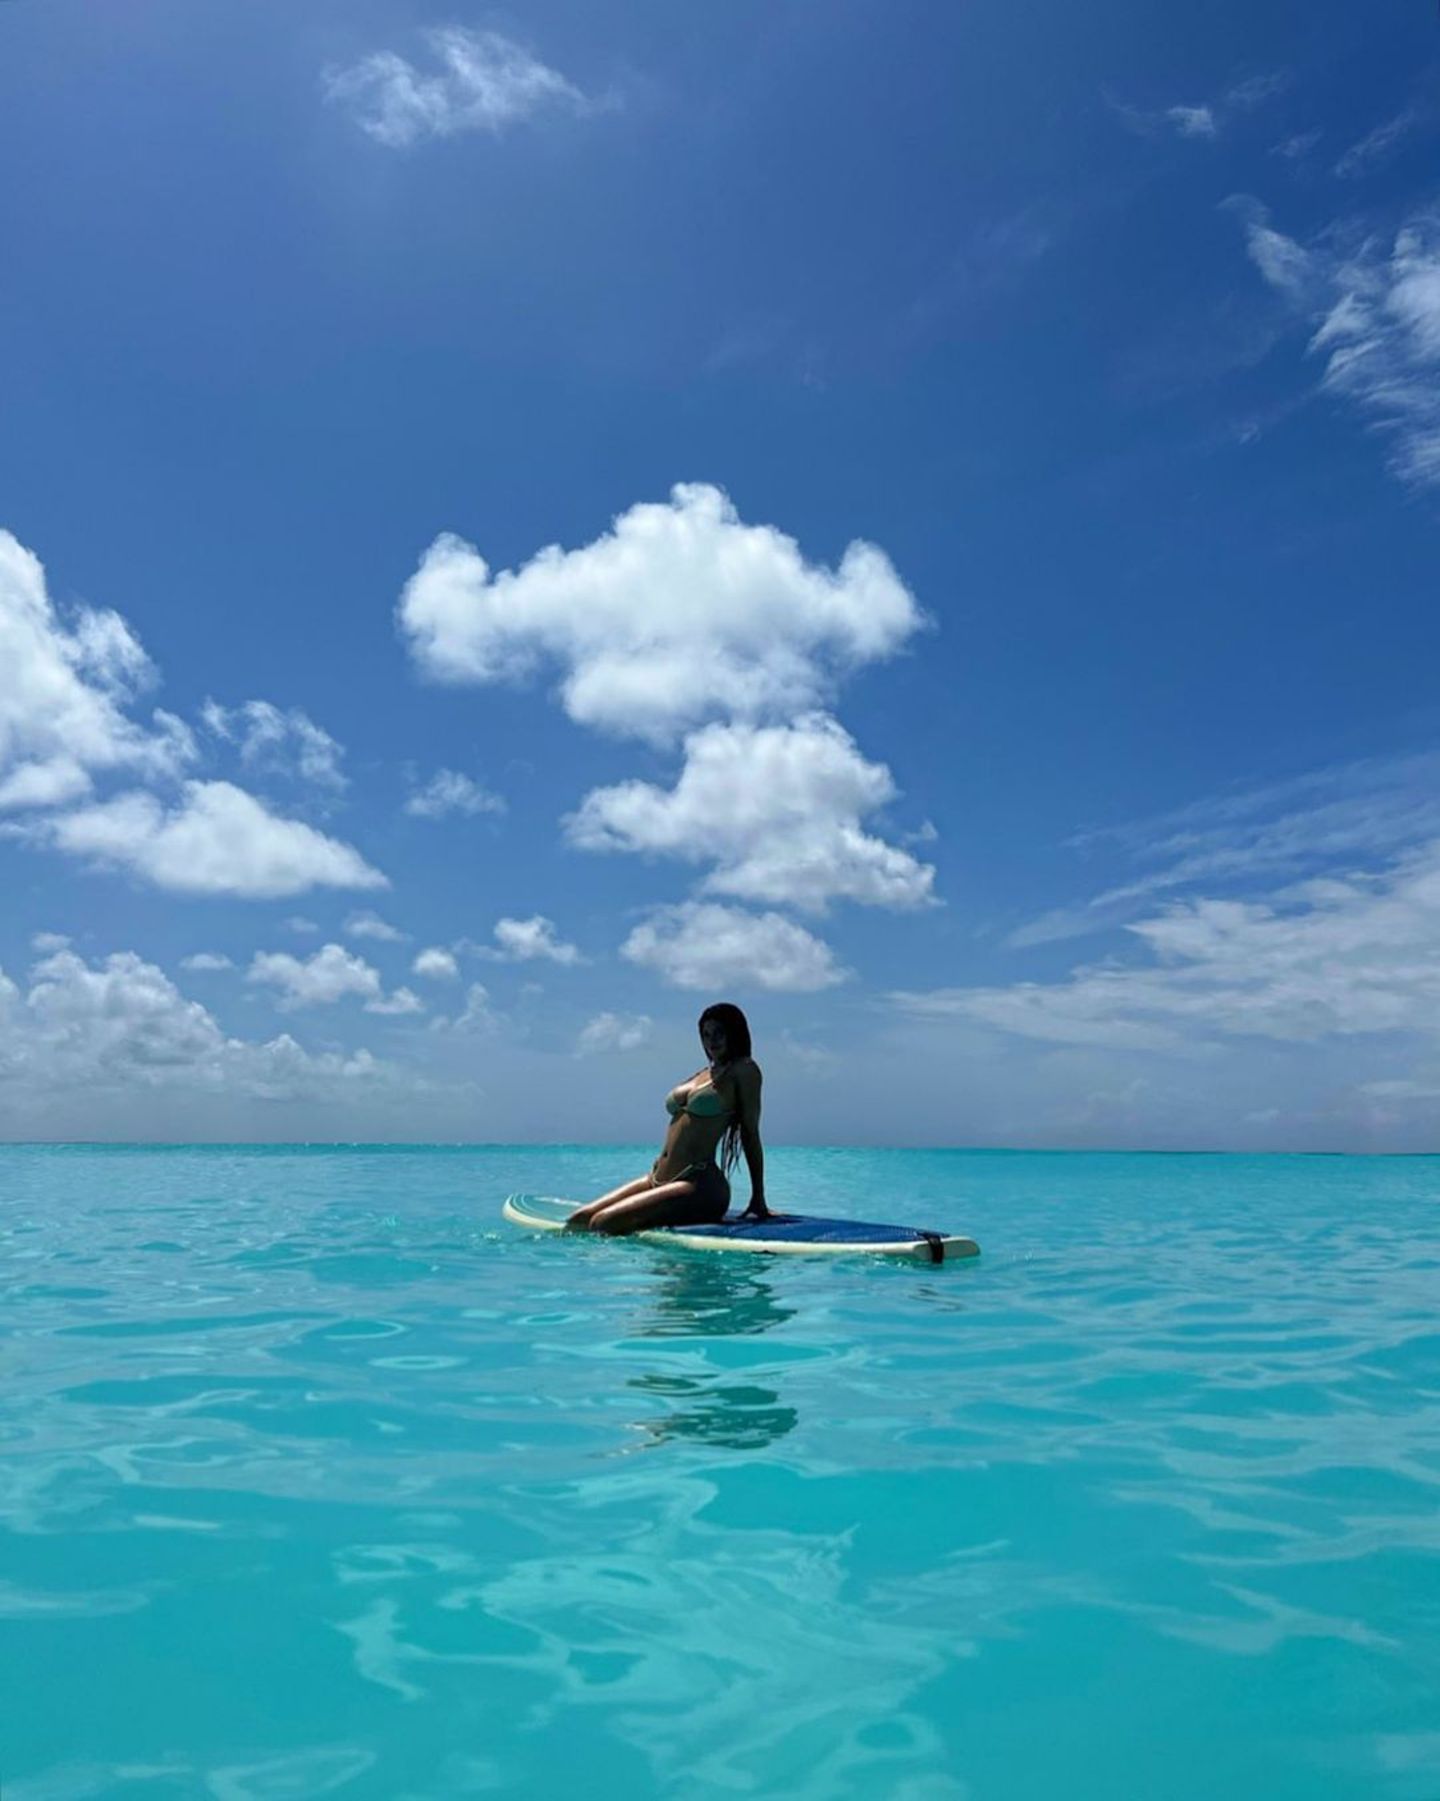 Kylie Jenner kann sich wirklich glücklich schätzen, unter blauem Himmel sonnt sie sich im türkisfarbenen Meer auf einem Surfboard. Und kommentiert diese paradiesische Szene entsprechend mit "happy girl".